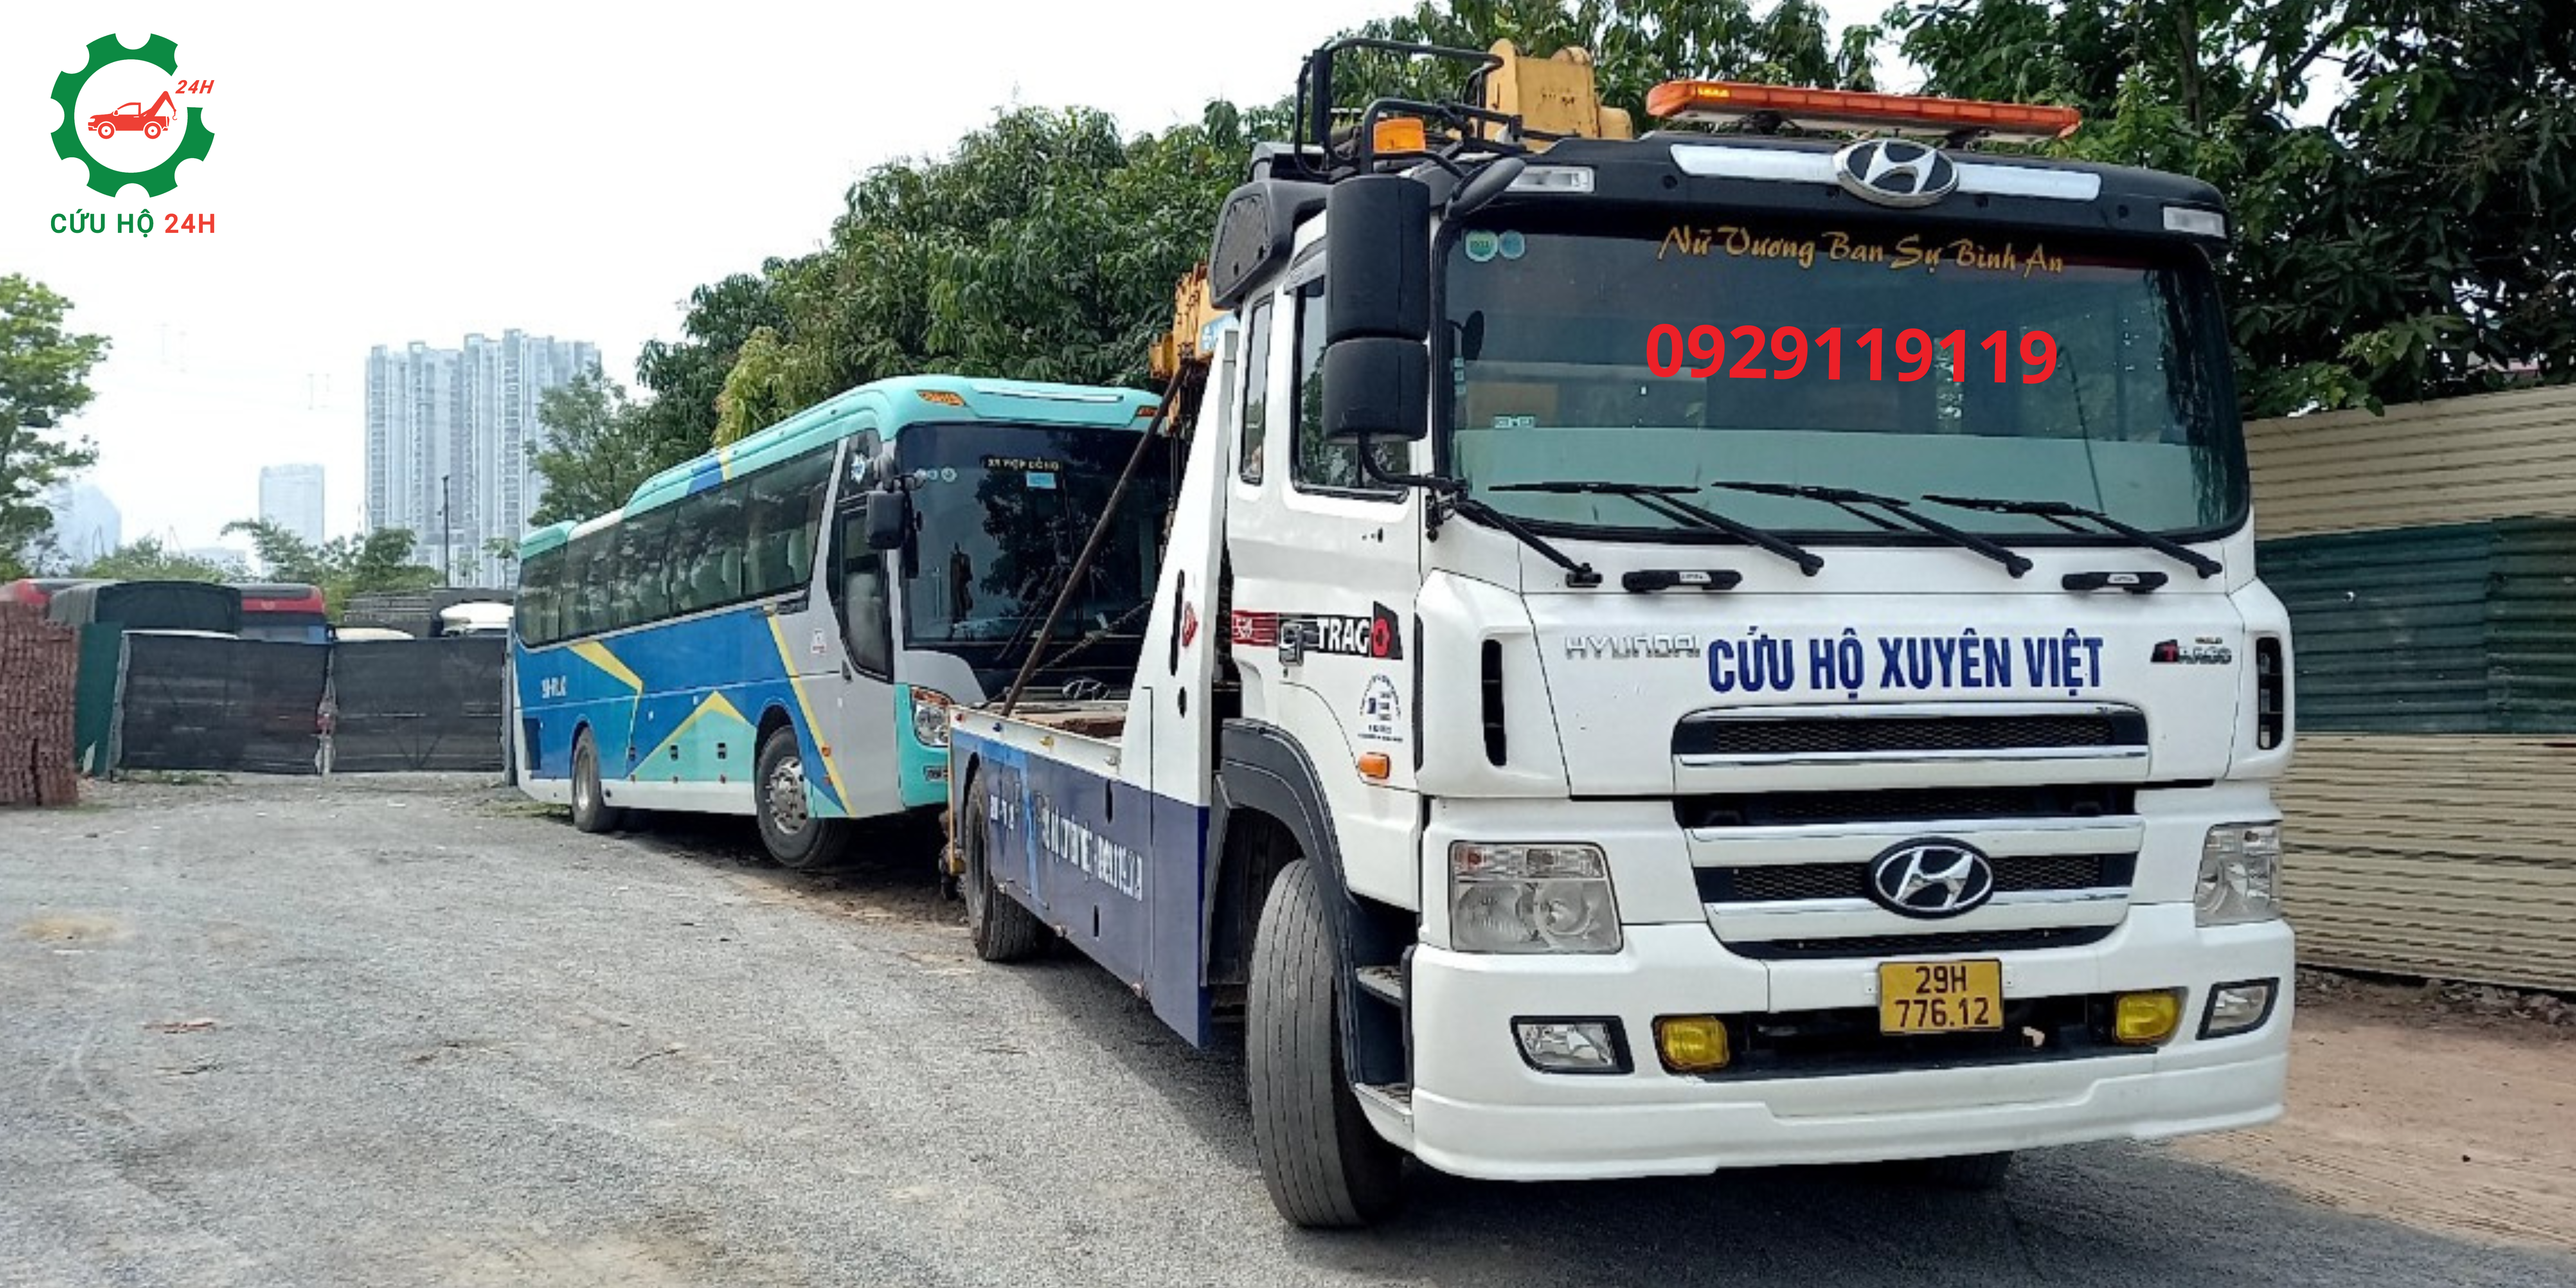 Dịch vụ cứu hộ xe khách cao tốc Hà Nội, Lào Cai là dịch vụ chất lượng số 1